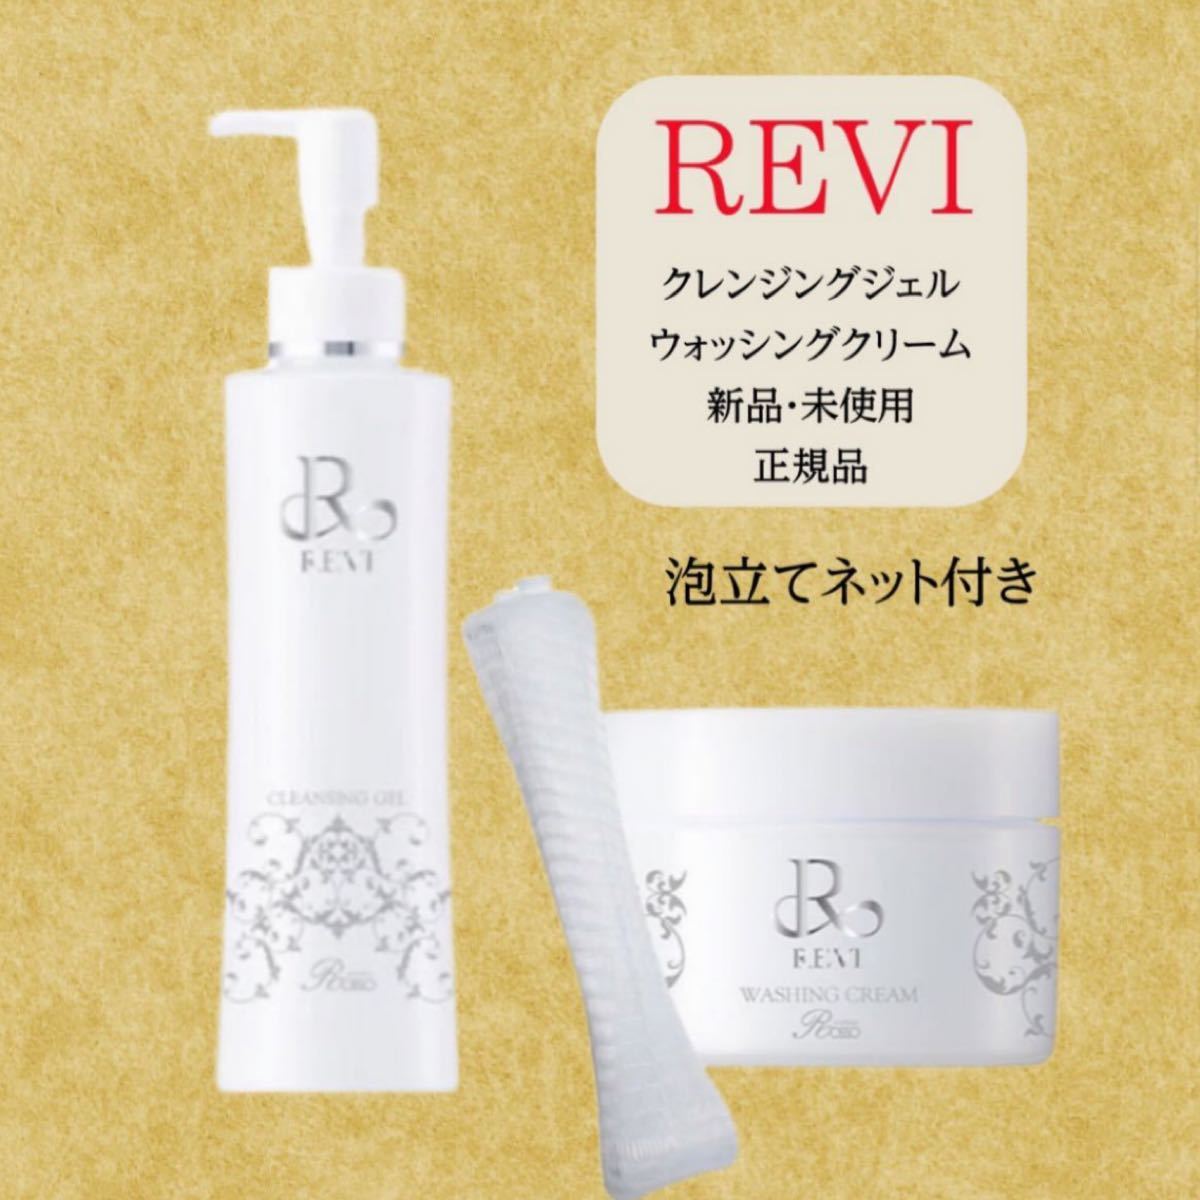 REVI ルヴィクレンジング ウォッシングクリーム 2点セット - 基礎化粧品